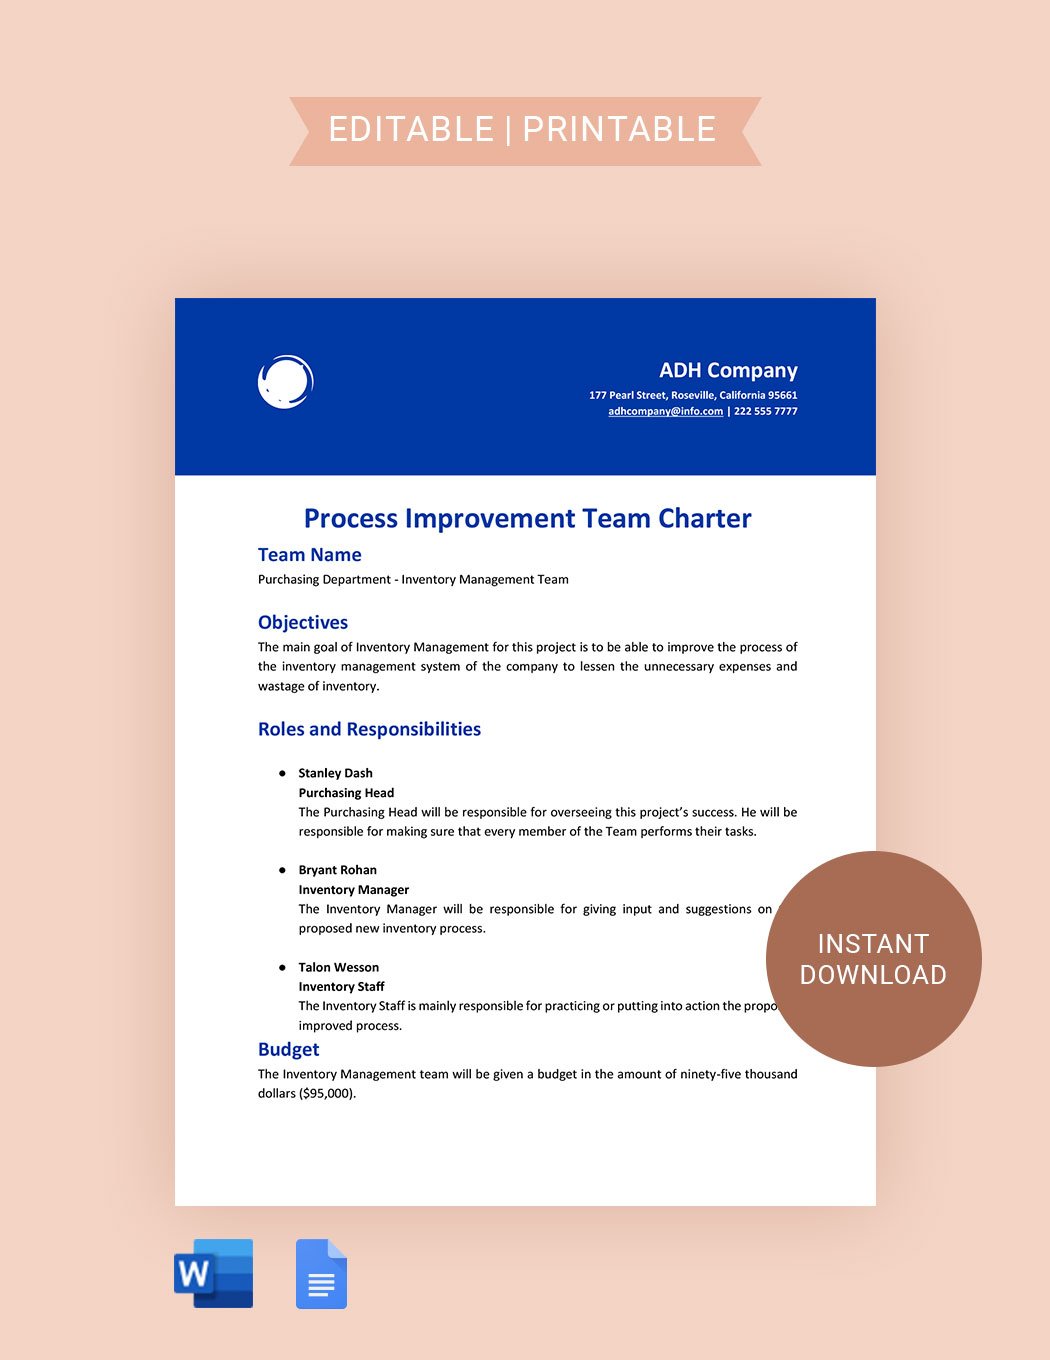 Process Improvement Team Charter Template